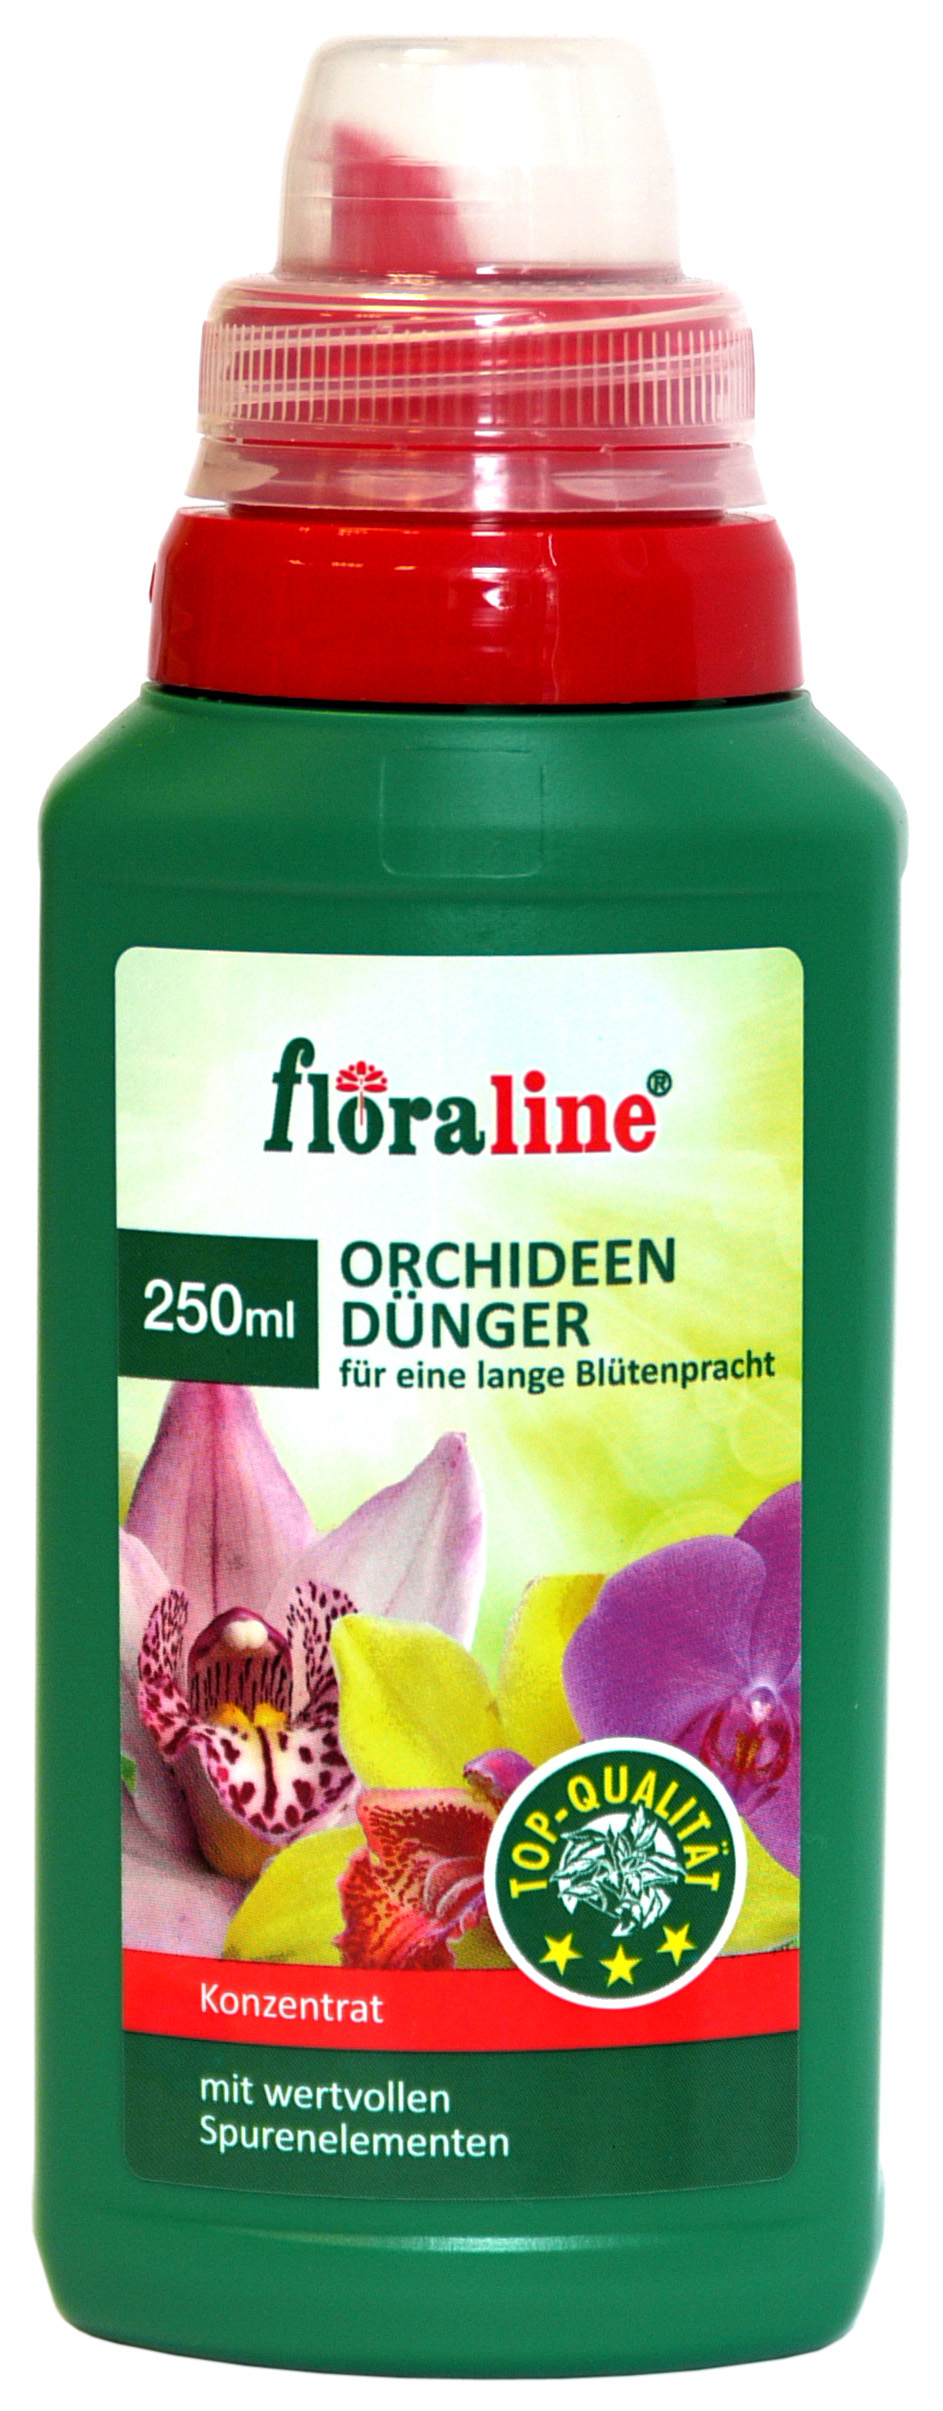 02205 - orchid fertilizer 250 ml